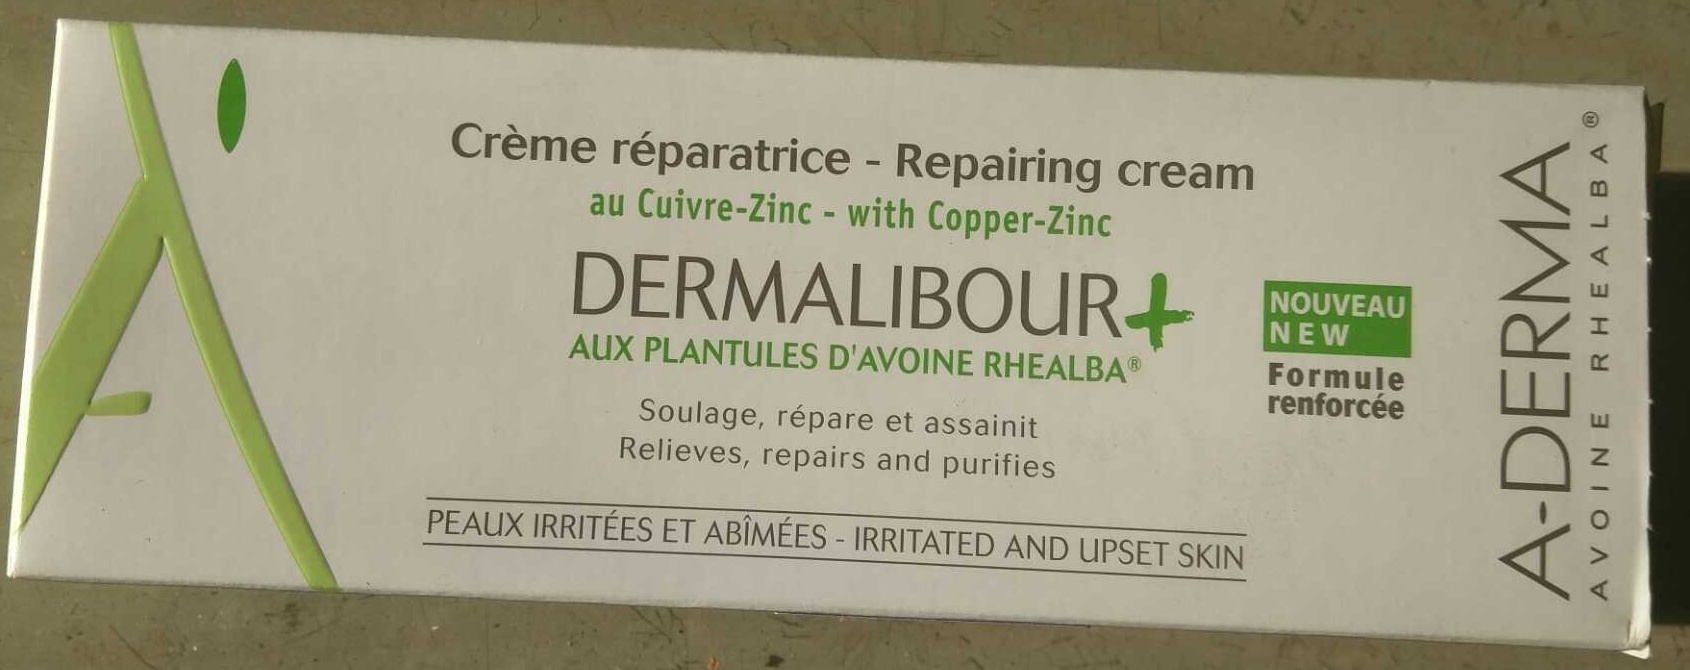 Crème réparatrice Dermalibour+ - Продукт - fr